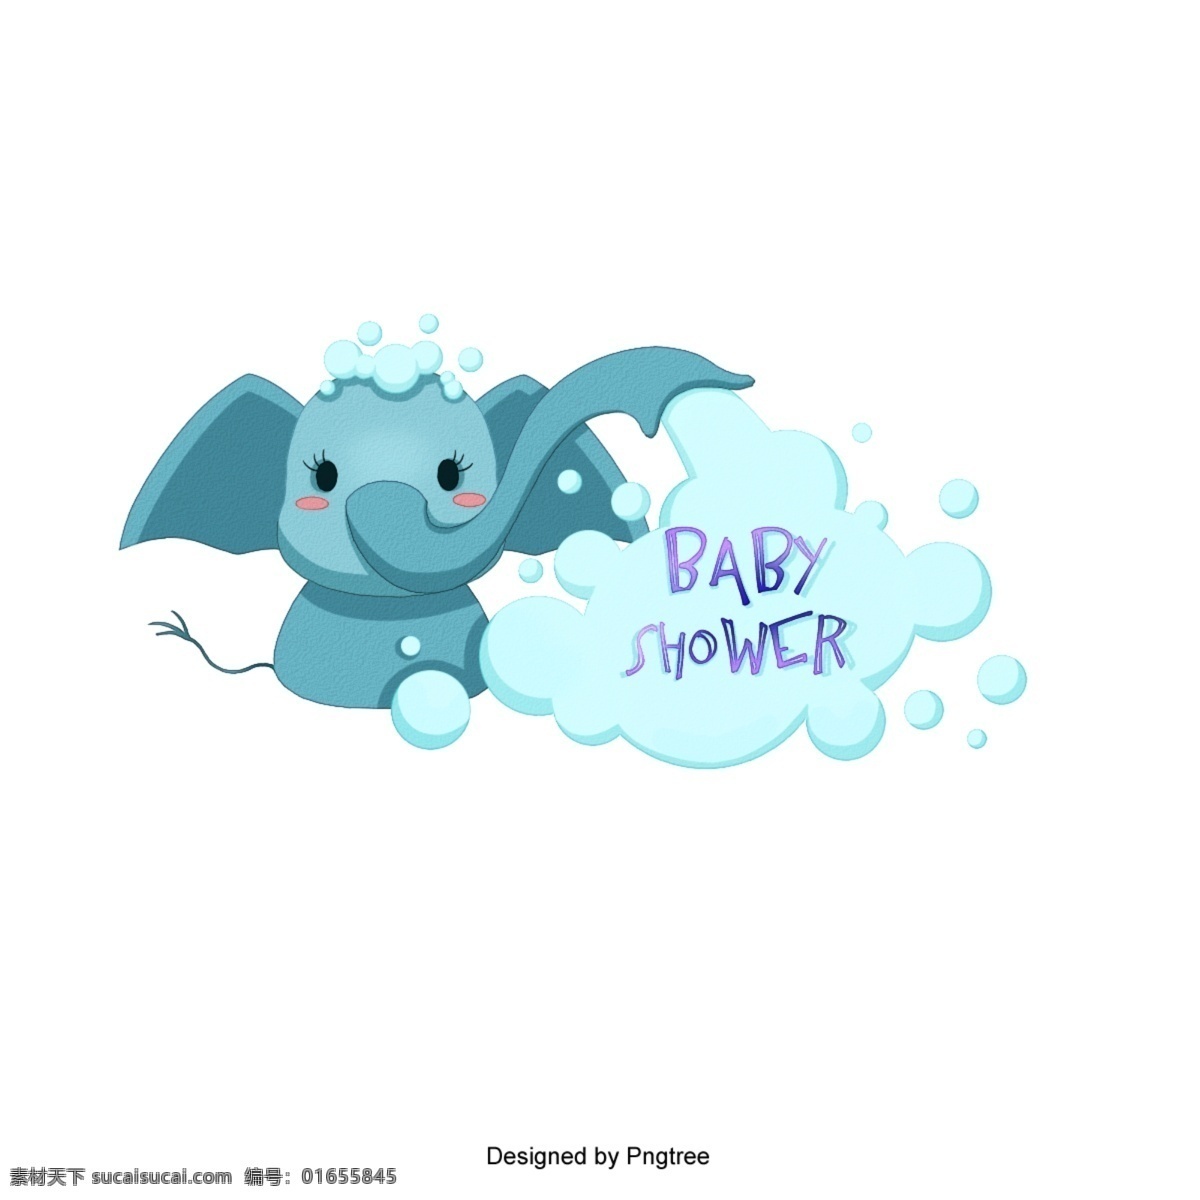 飞象 主题 婴儿 洗礼 云 大象 可爱 淋浴 蓝色 矢量 带